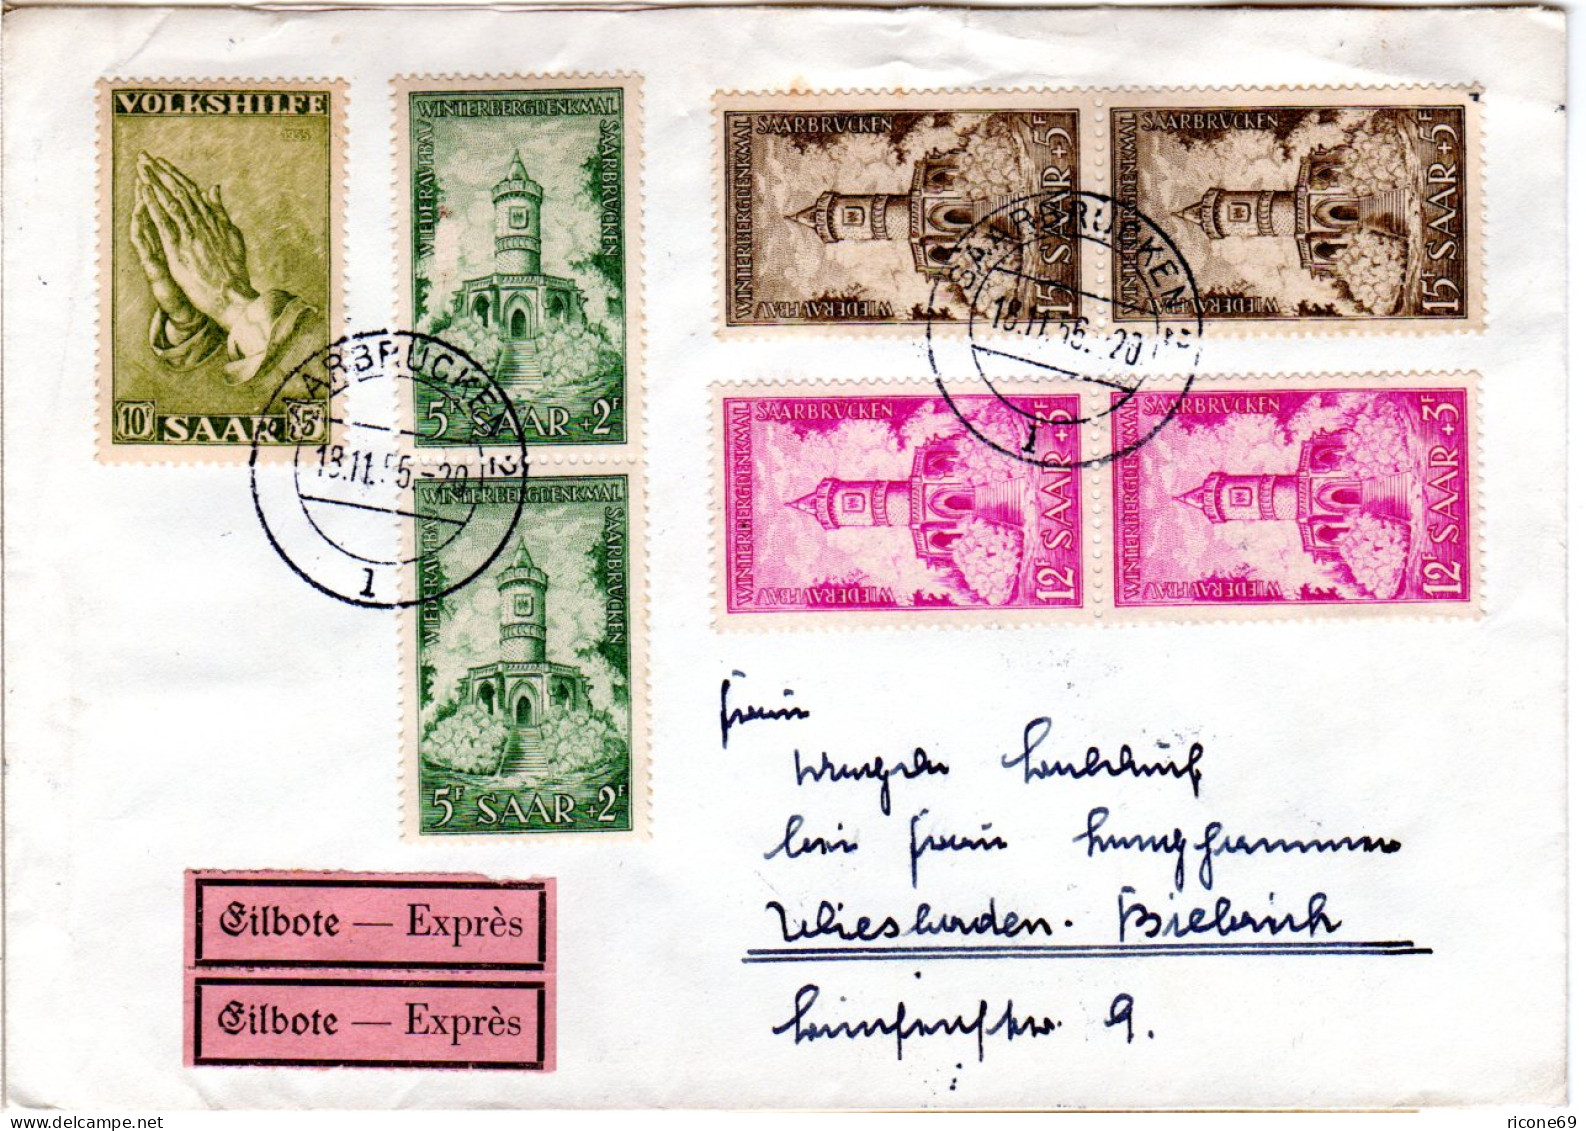 Saarland 1956, 7 Zuschlagmarken Auf Eilboten Brief V. Saarbrücken N. Wiesbaden. - Cartas & Documentos